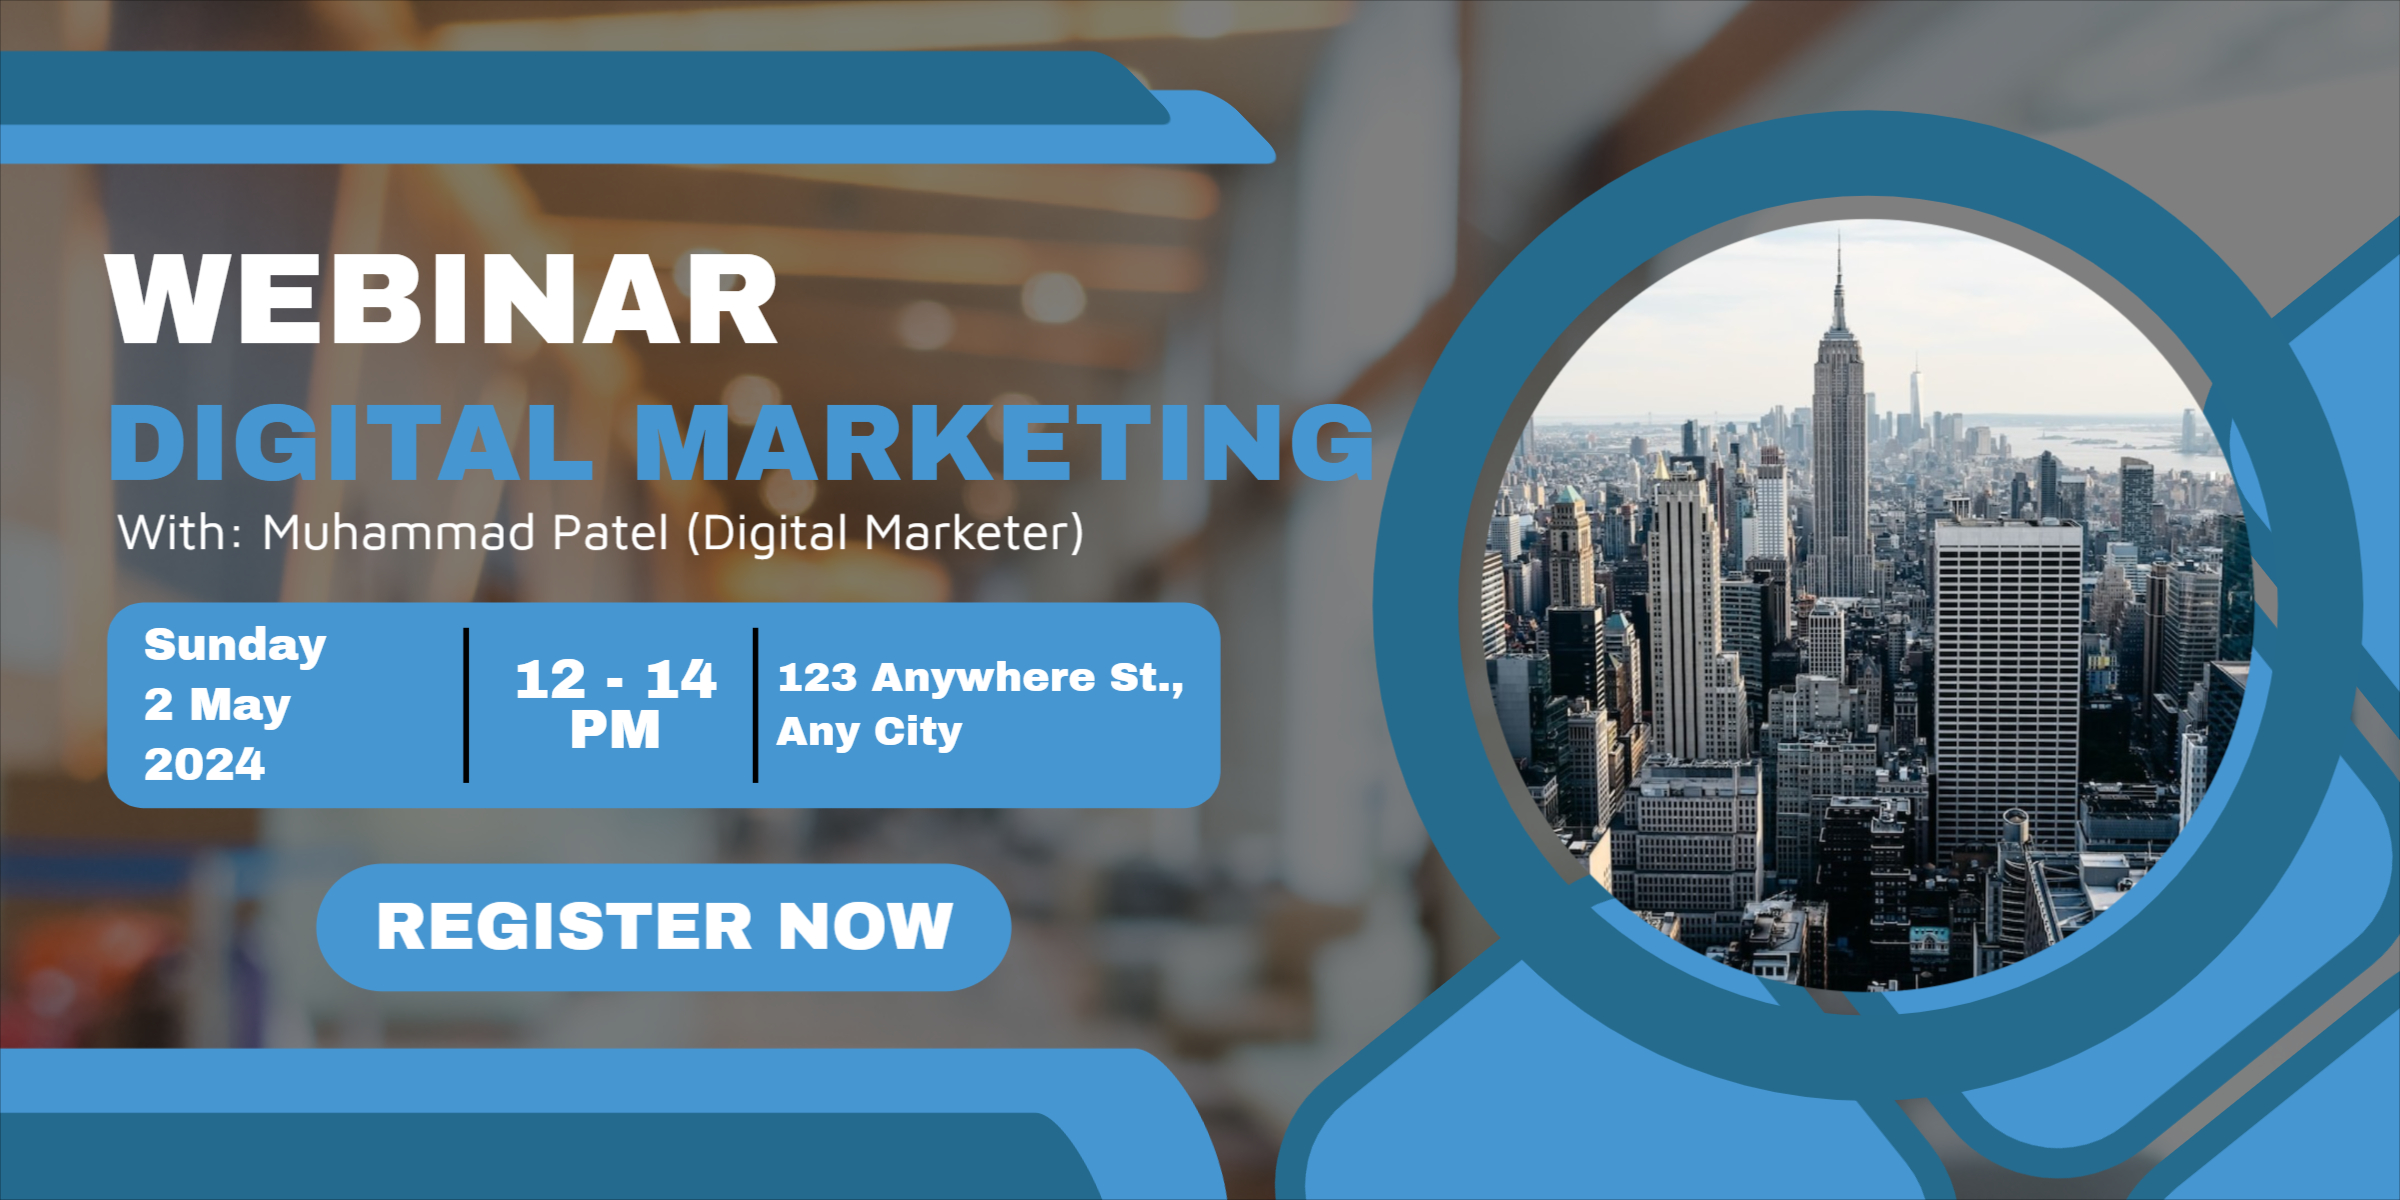  Webinar Digital Marketing Banner design download for free